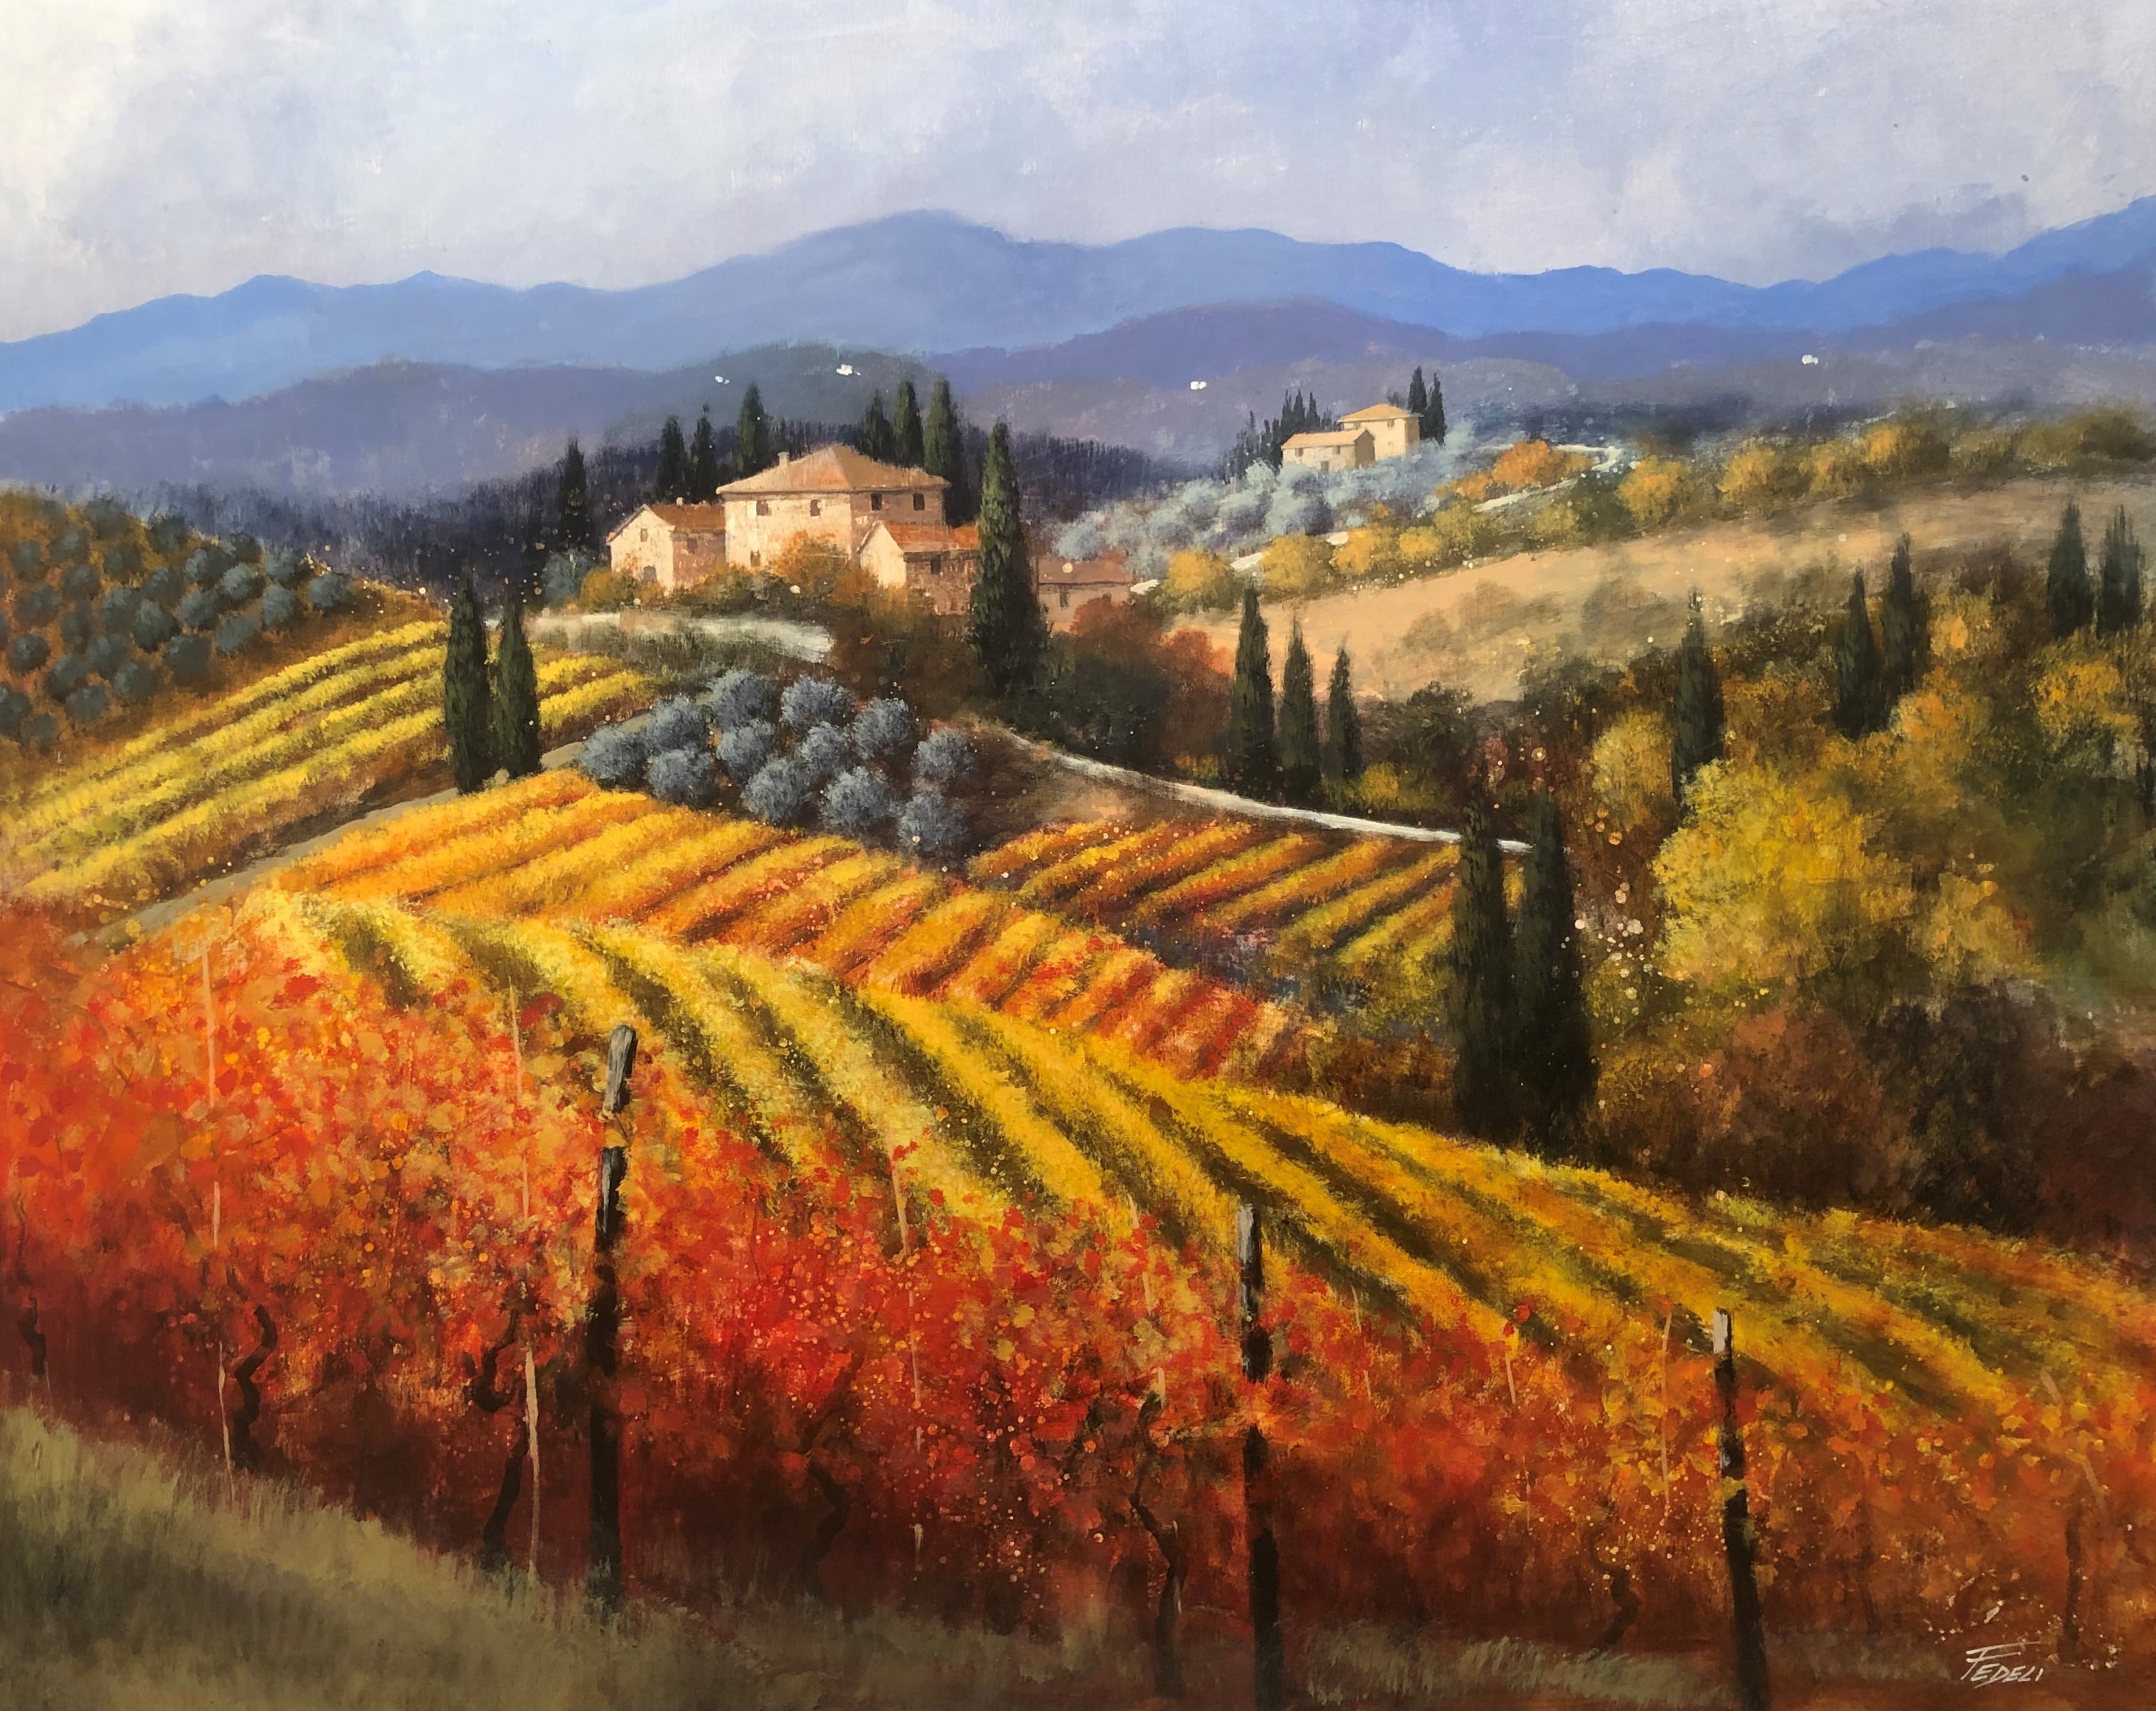 Code FE04 cm 80x100 "Vigne del Chianti in autunno"